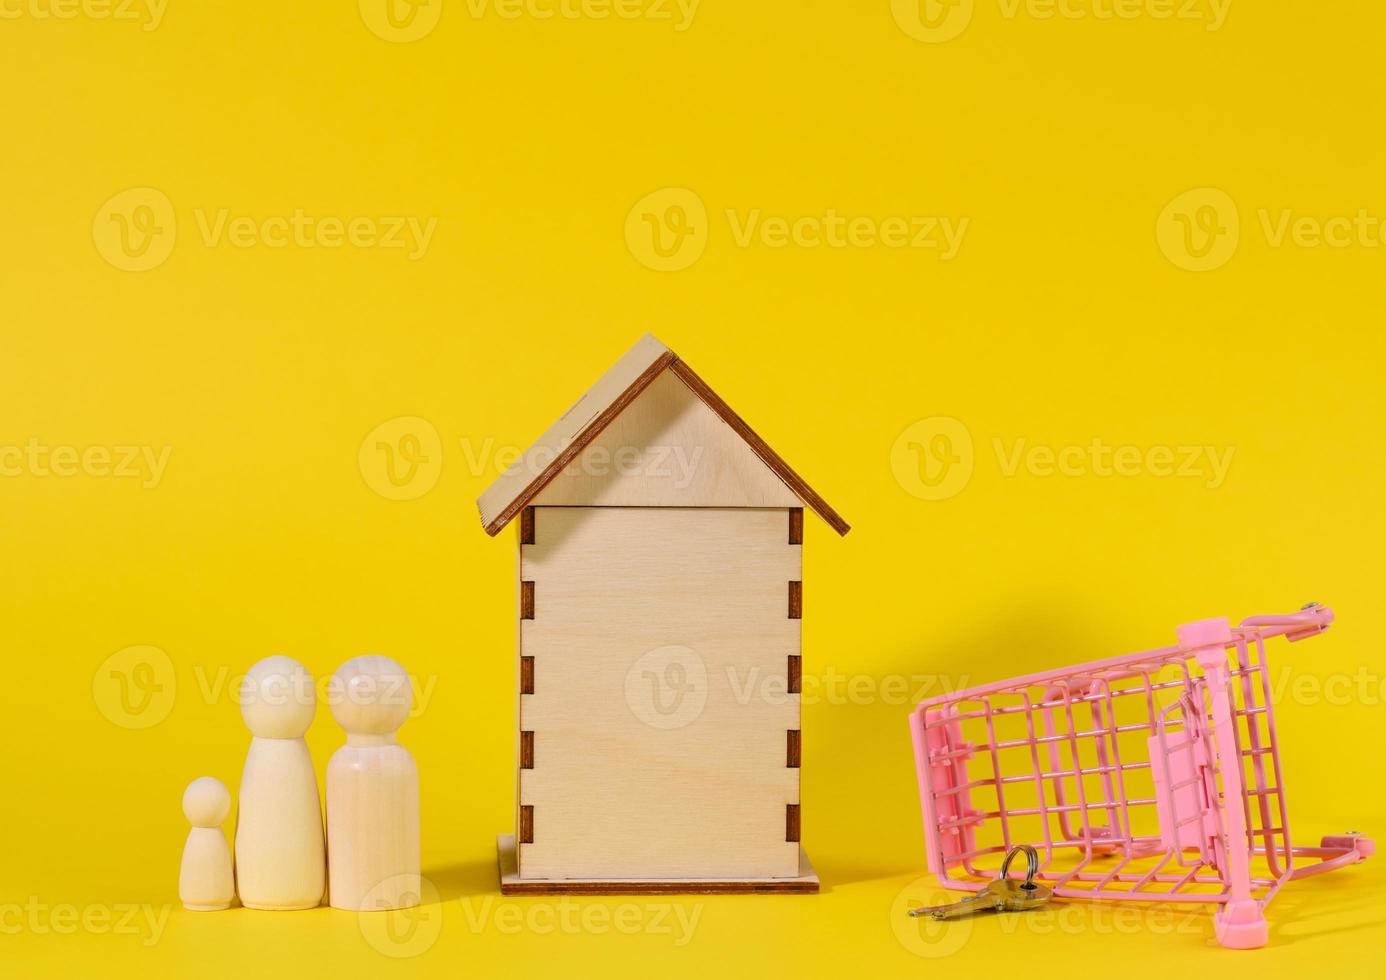 Holzhaus und Miniaturwagen aus Metall auf gelbem Hintergrund. immobilienkaufkonzept foto